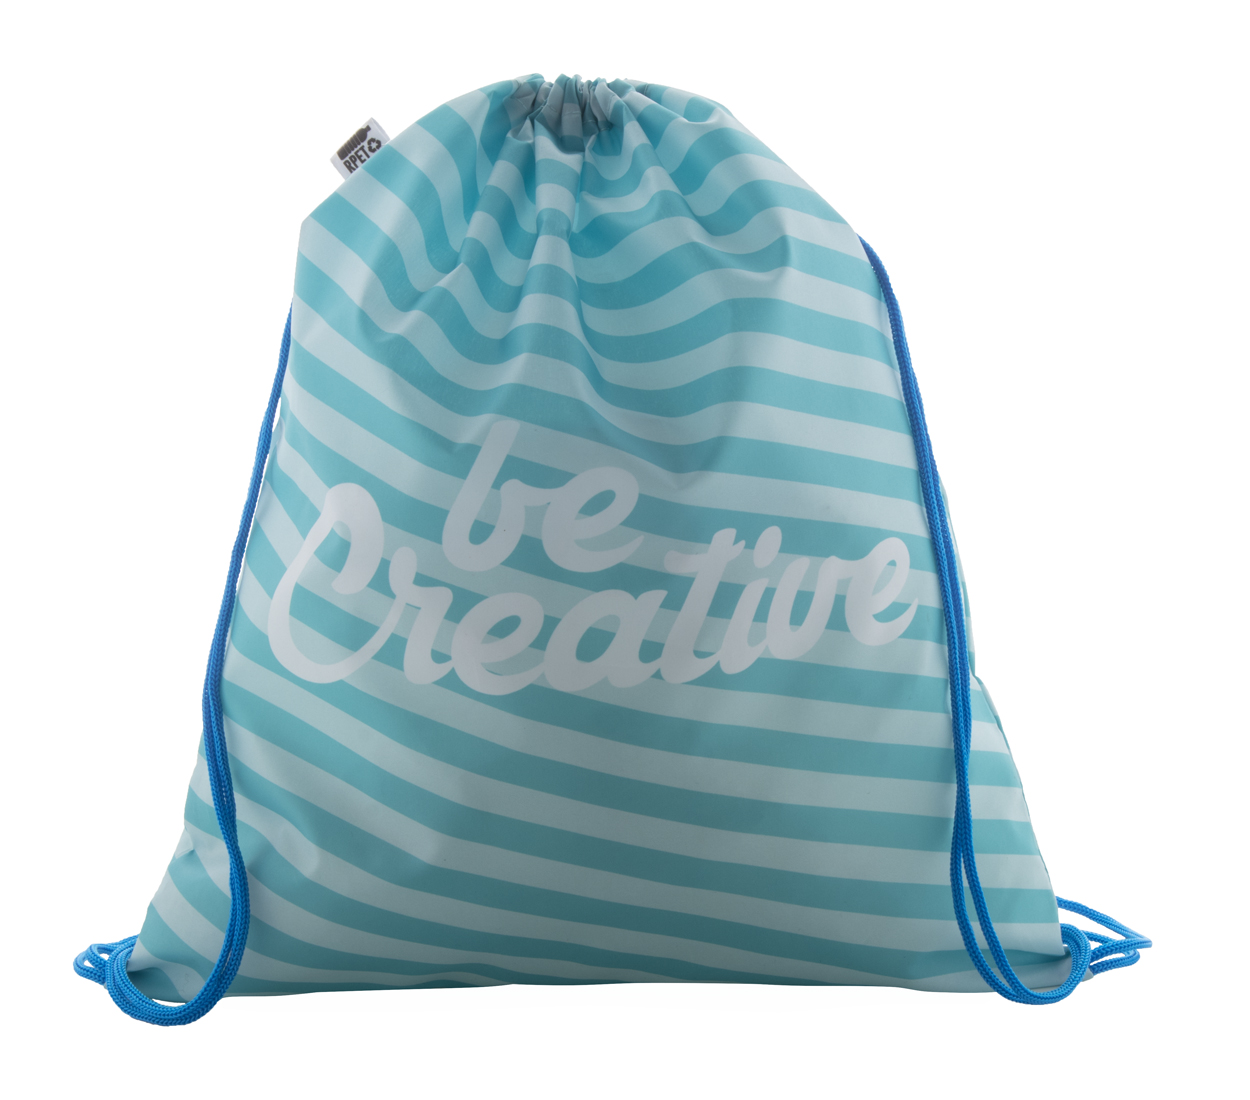 Custom made CreaDraw RPET drawstring bag - blue